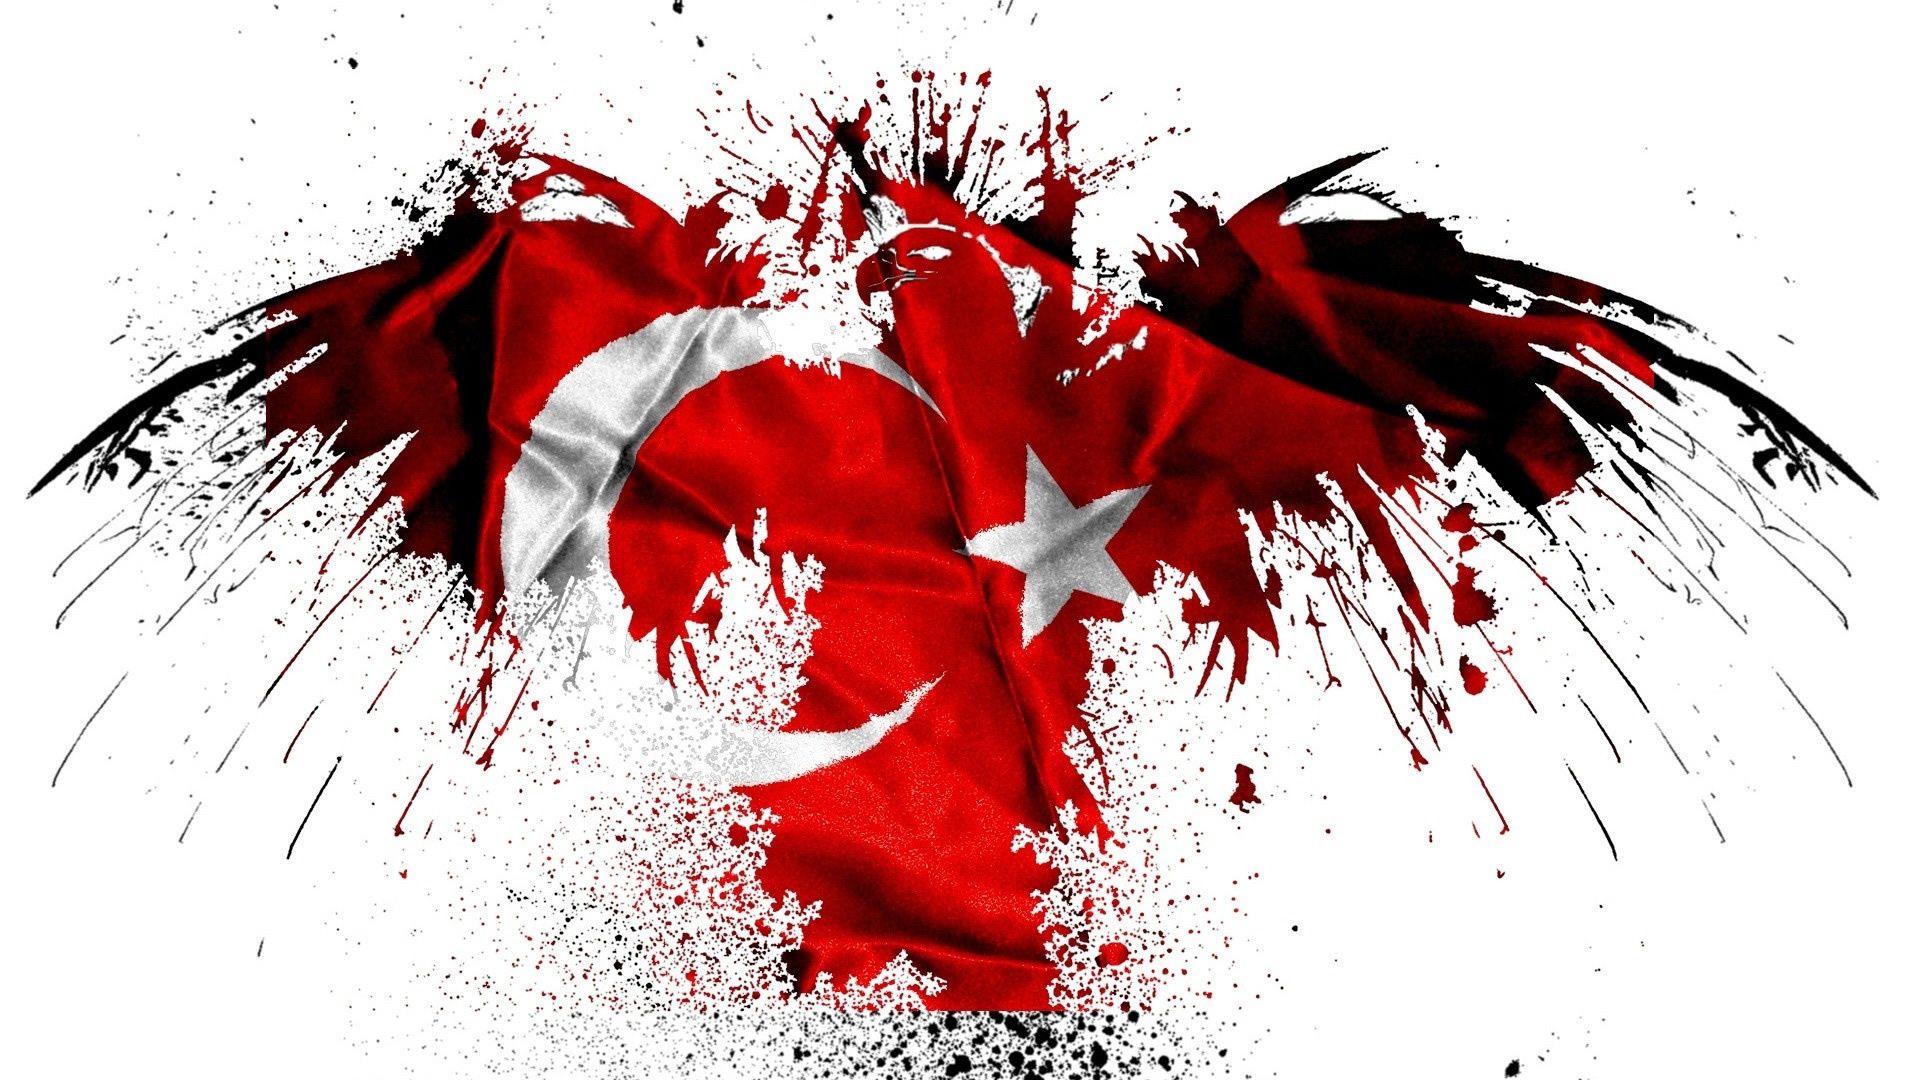 Beyaz turk bayragi resimleri 6